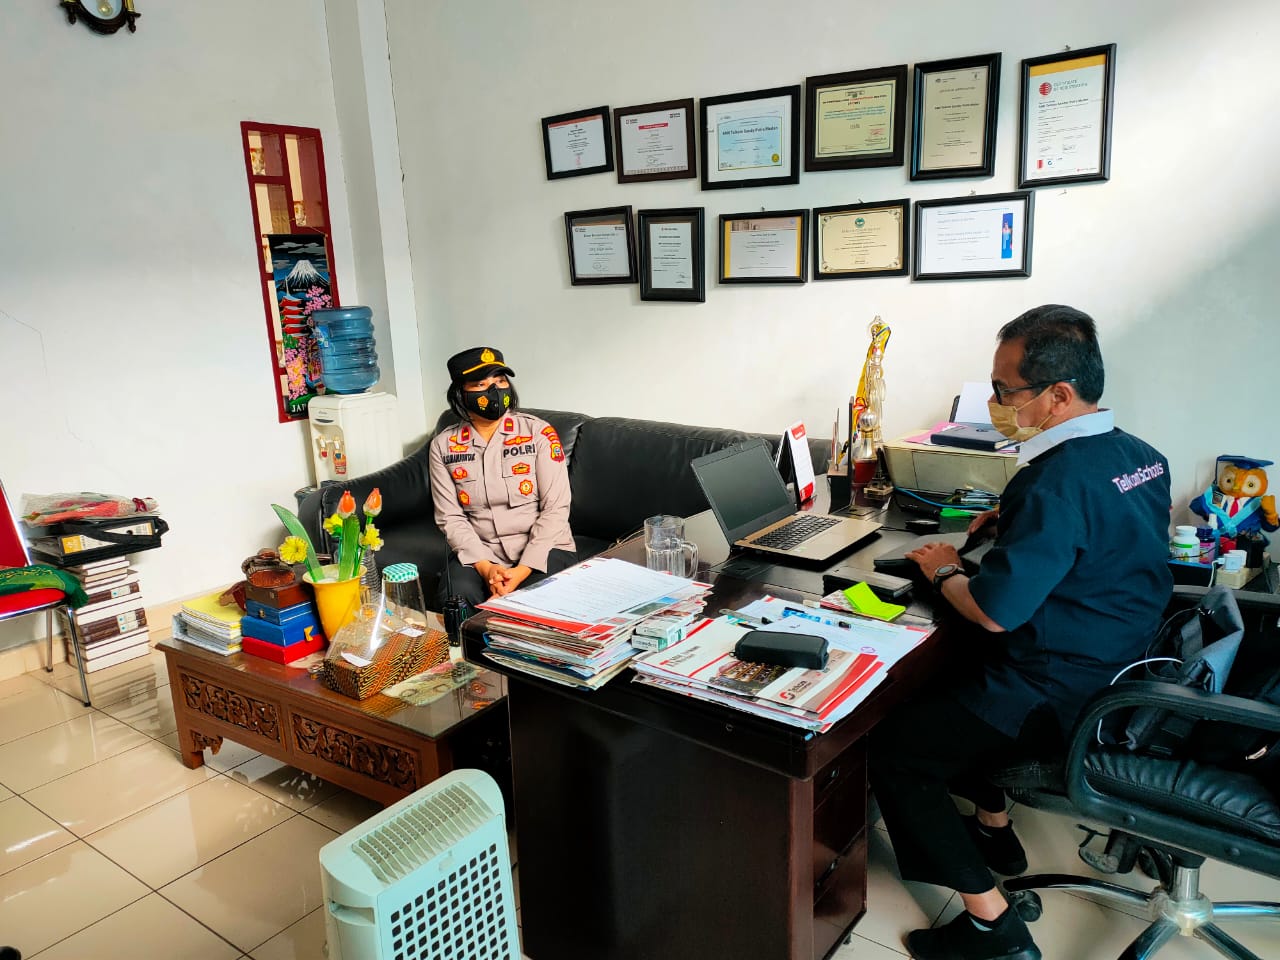 Kapolsek Medan Tuntungan Kunjungan ke Sekolah SMK Telkom